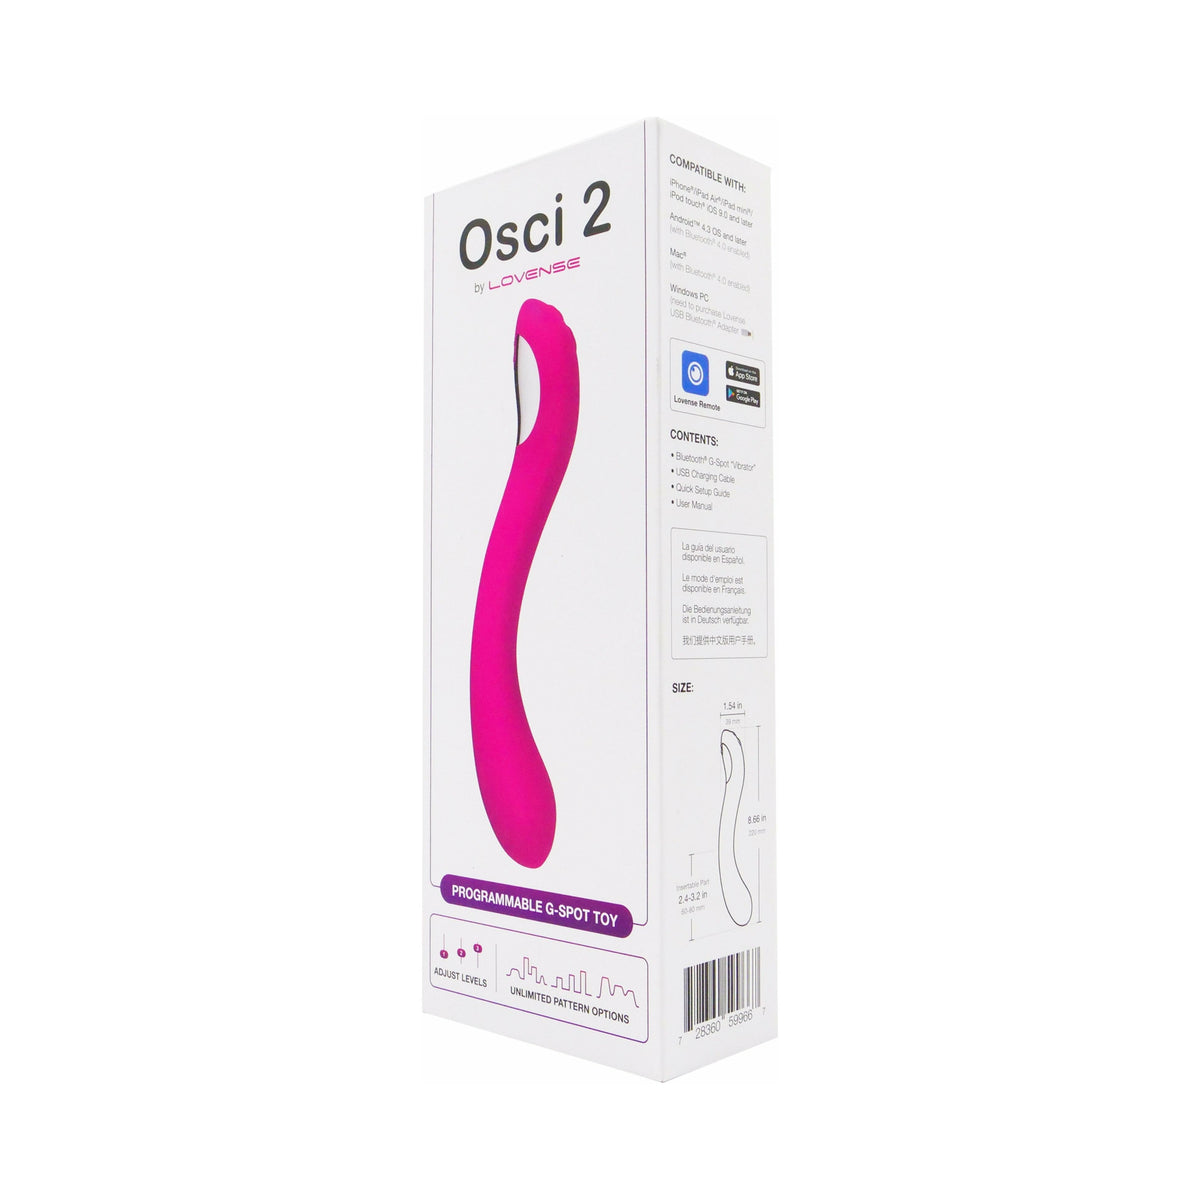 Lovense Osci 2 – Bluetooth® G-Spot Oscillation Wand - Pink